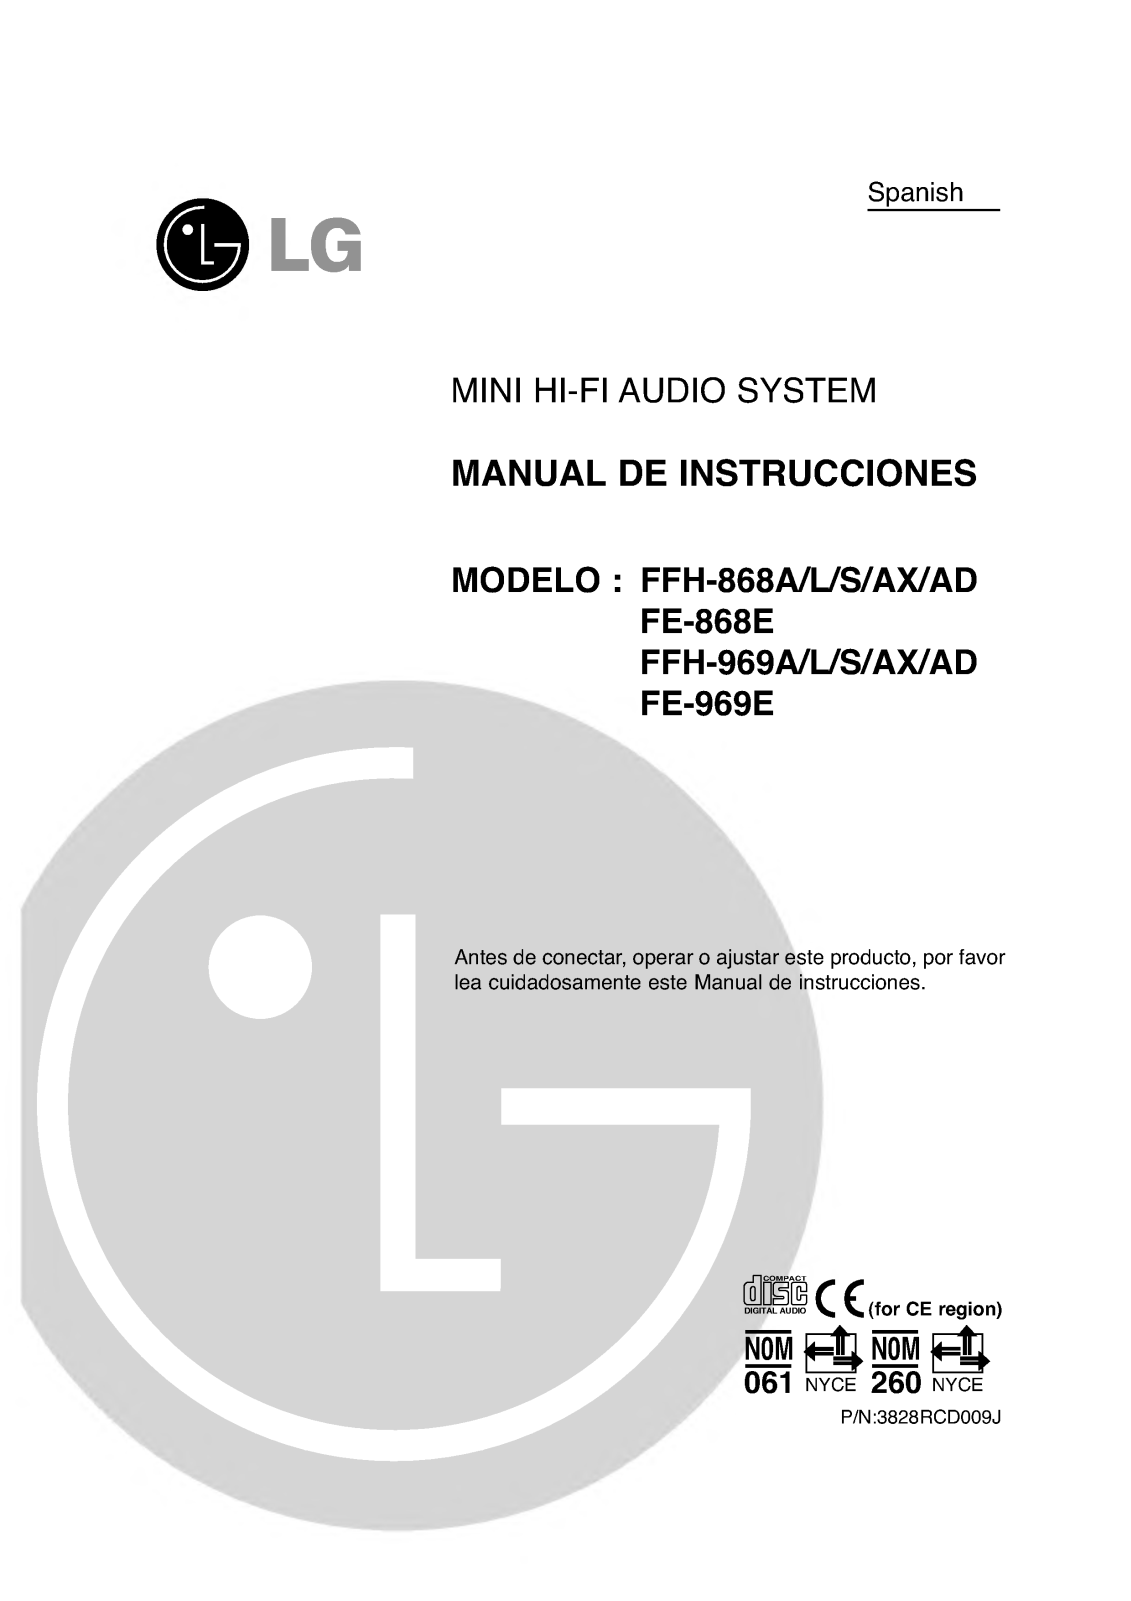 Lg FFH-868L, FFH-868S, FFH-868AX, FFH-868AD, FFH-969A Instructions Manual